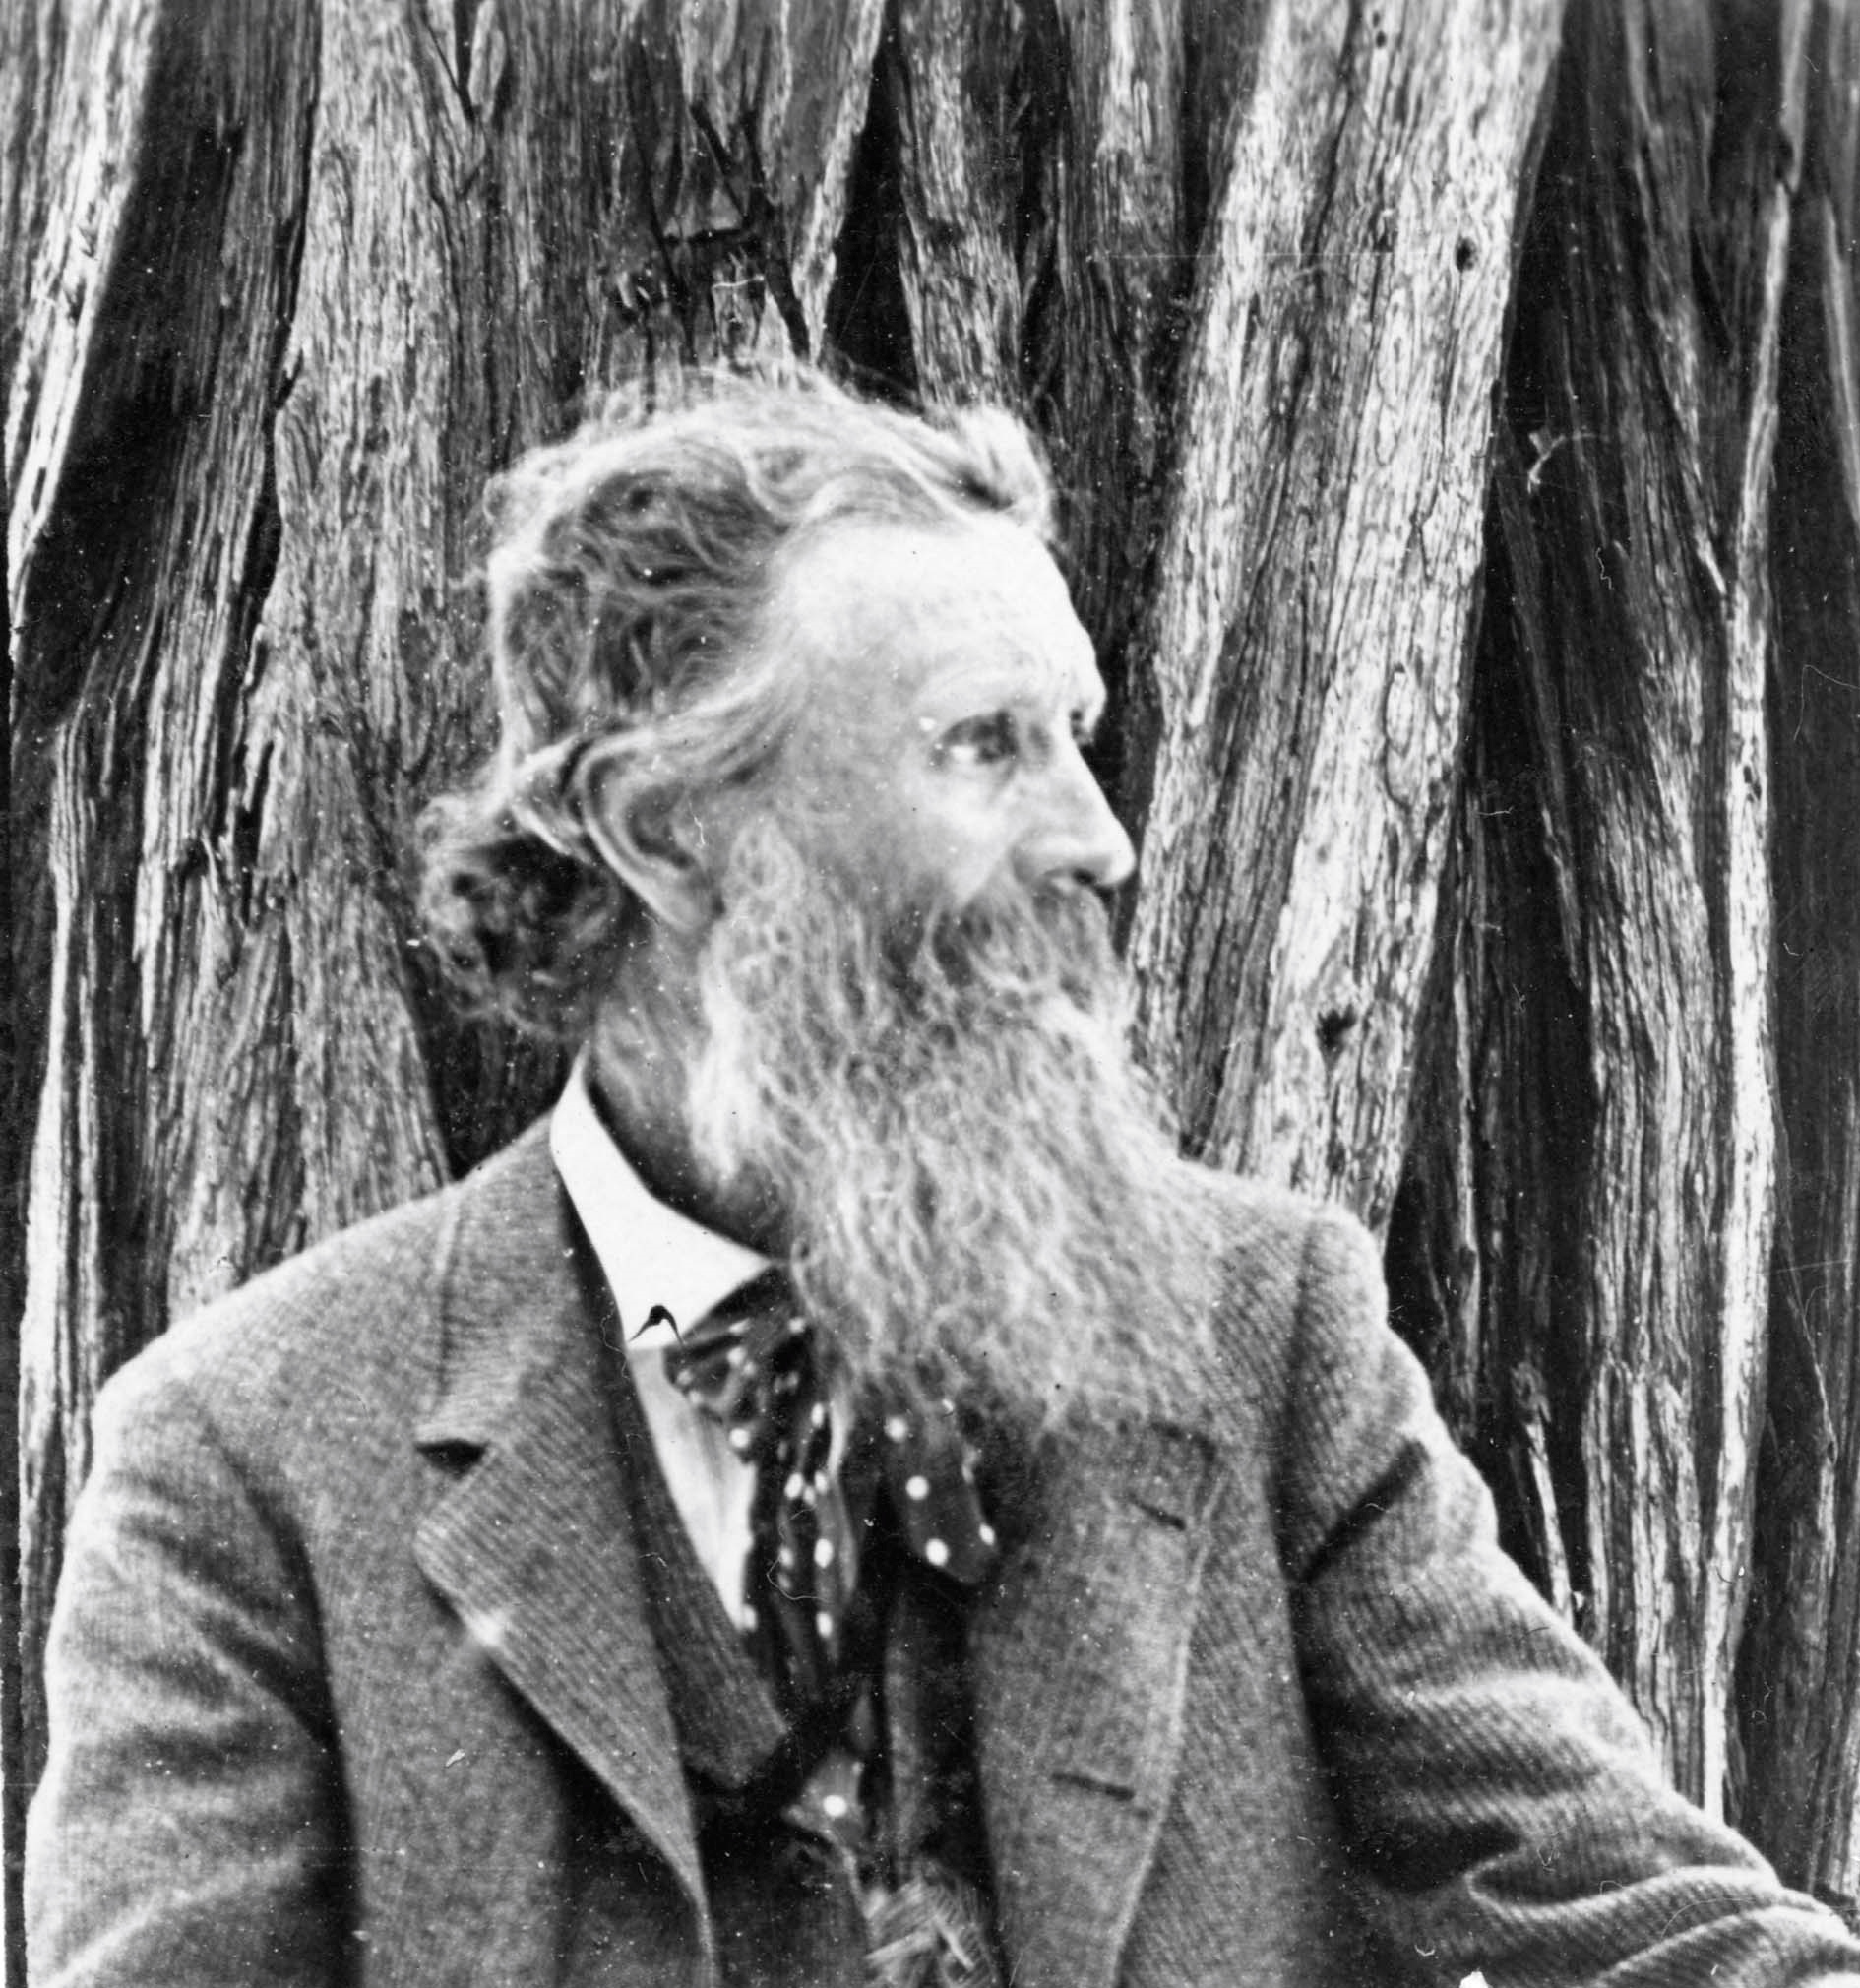 A long-bearded John Muir gazes sideways in front of a tree and wears a suit.